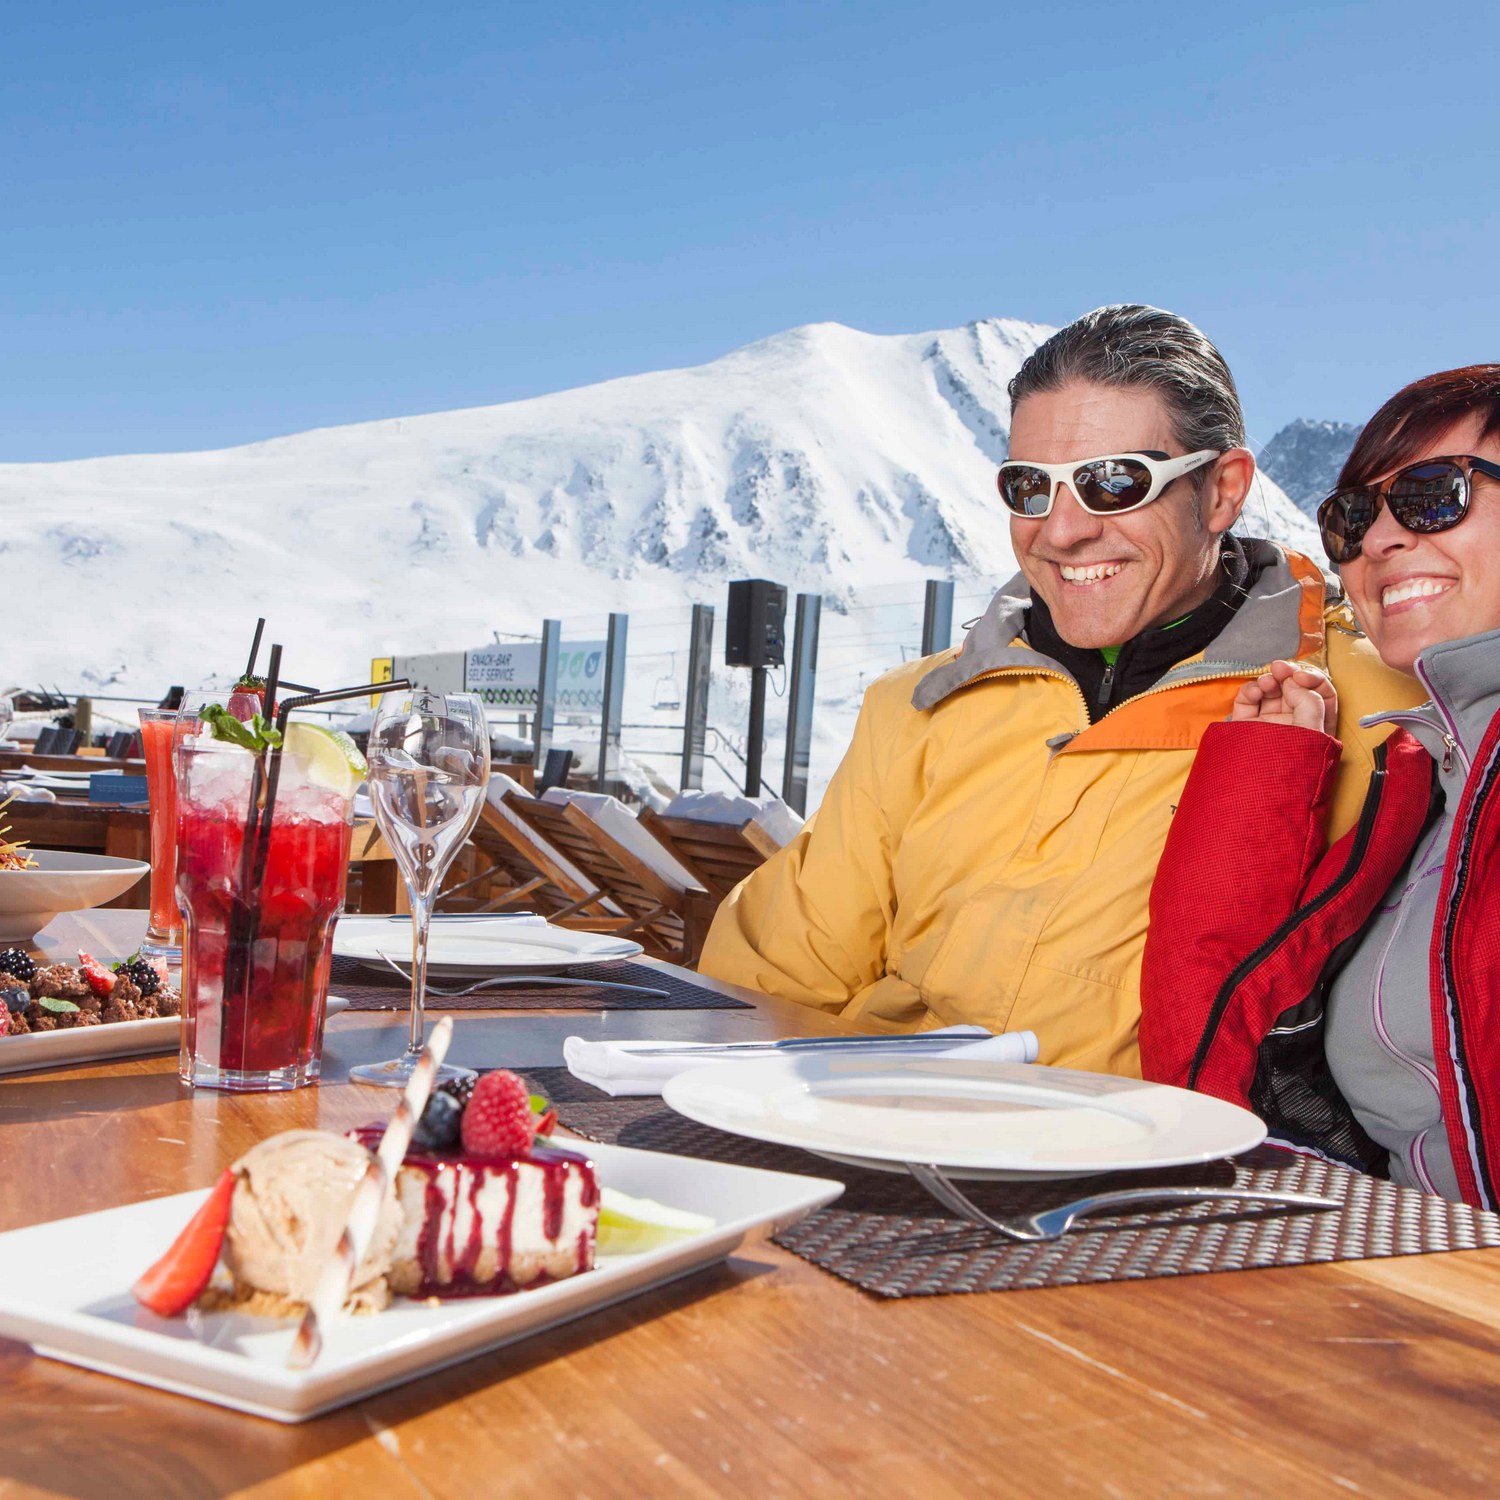 Sun & terraces in ski resorts